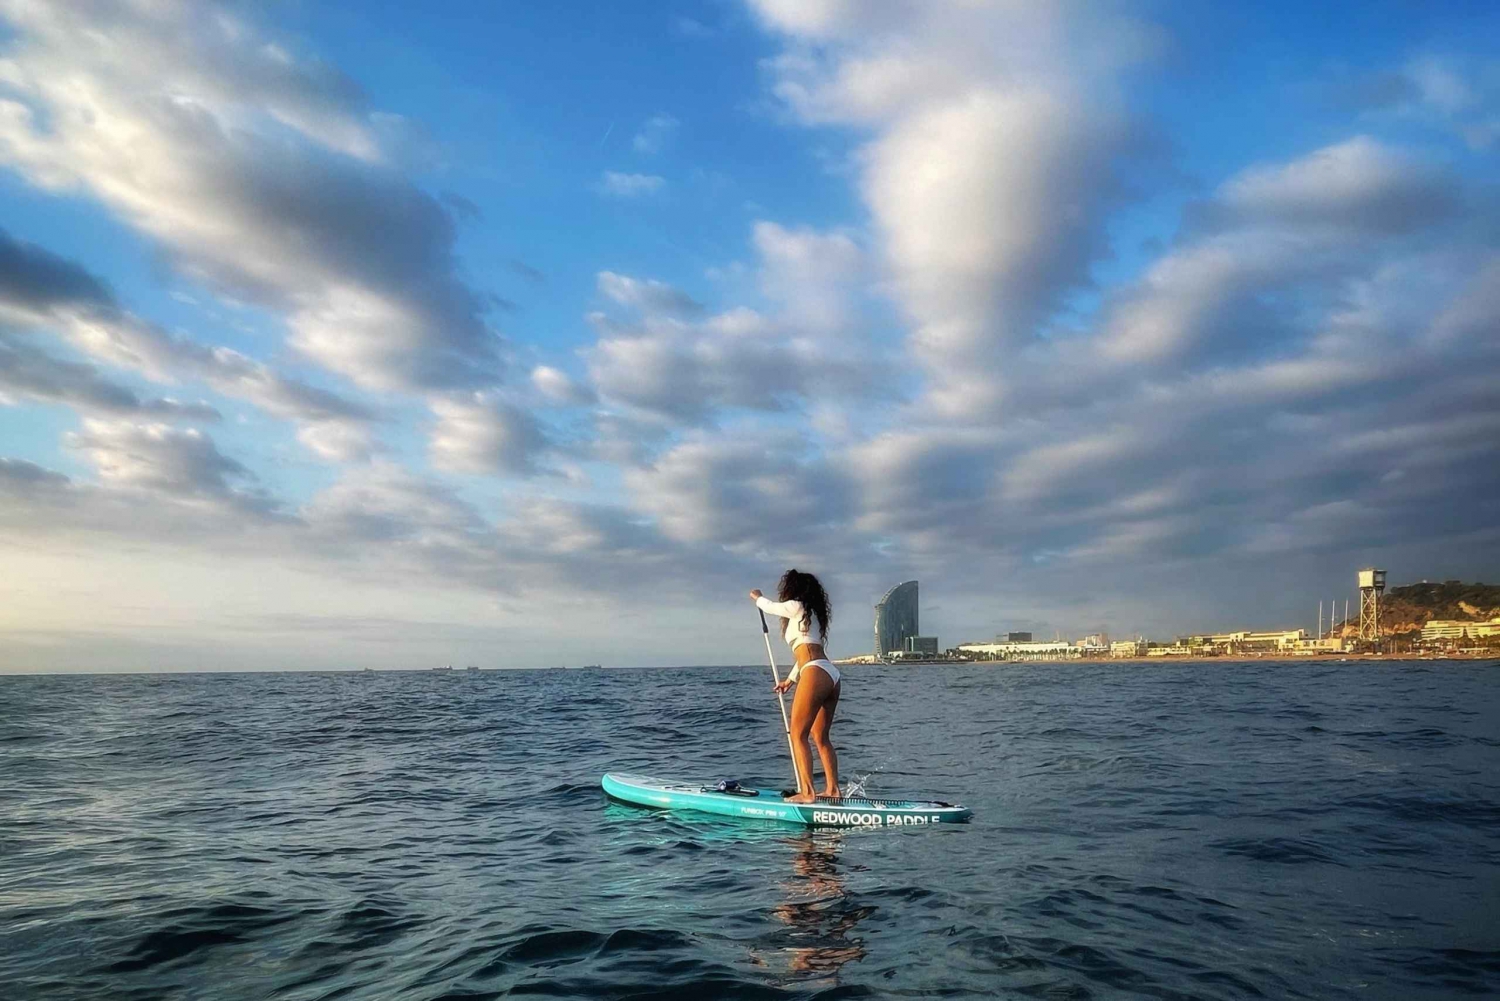 Solnedgang+padlesurfing med musikk+bilder&videoer Barceloneta+snack